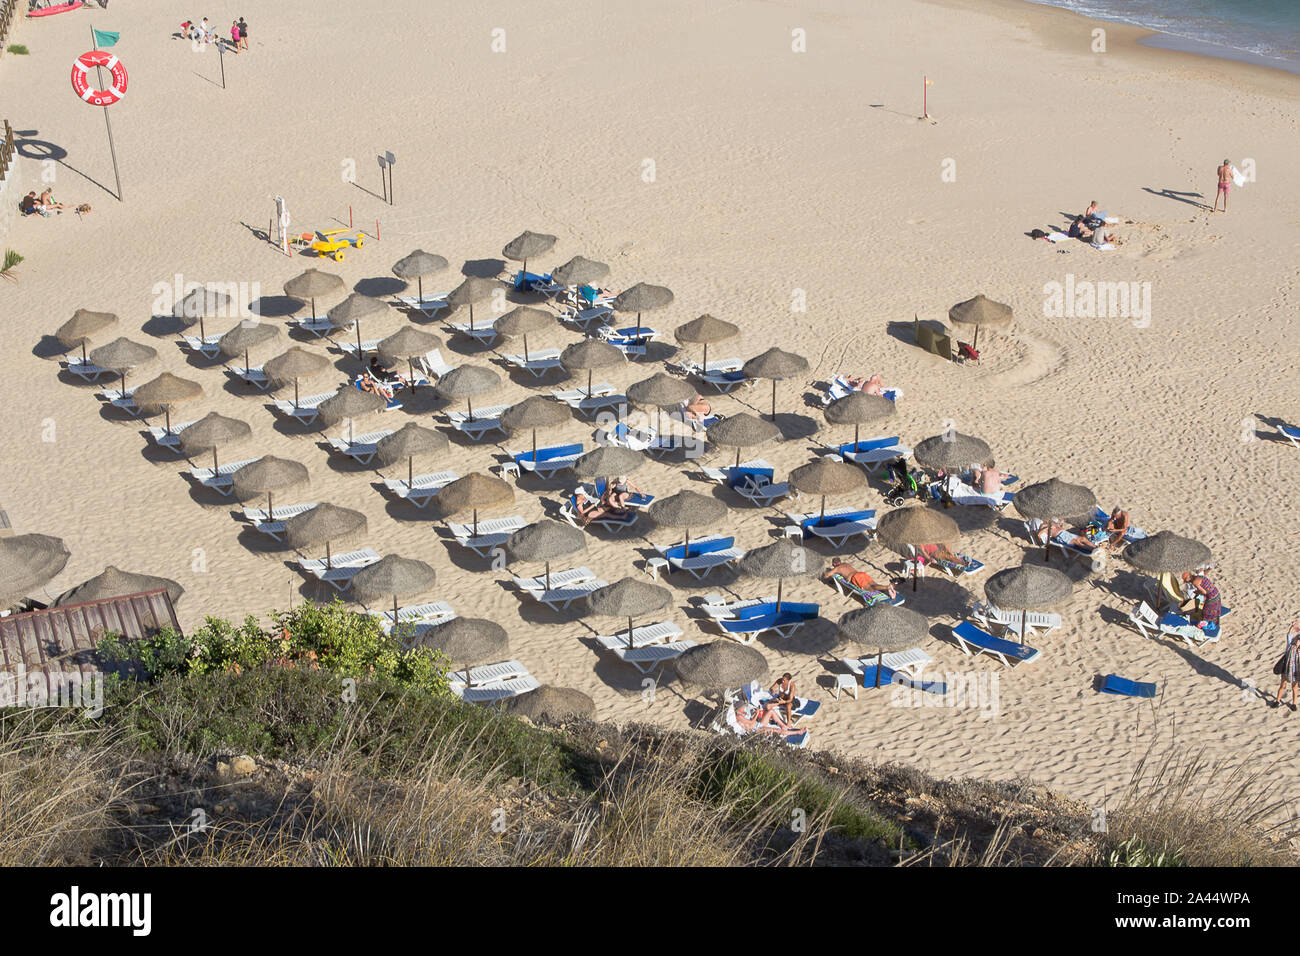 Sonnenschirm Bildung - Salema - Portugal Bild von der Klippe. Stockfoto